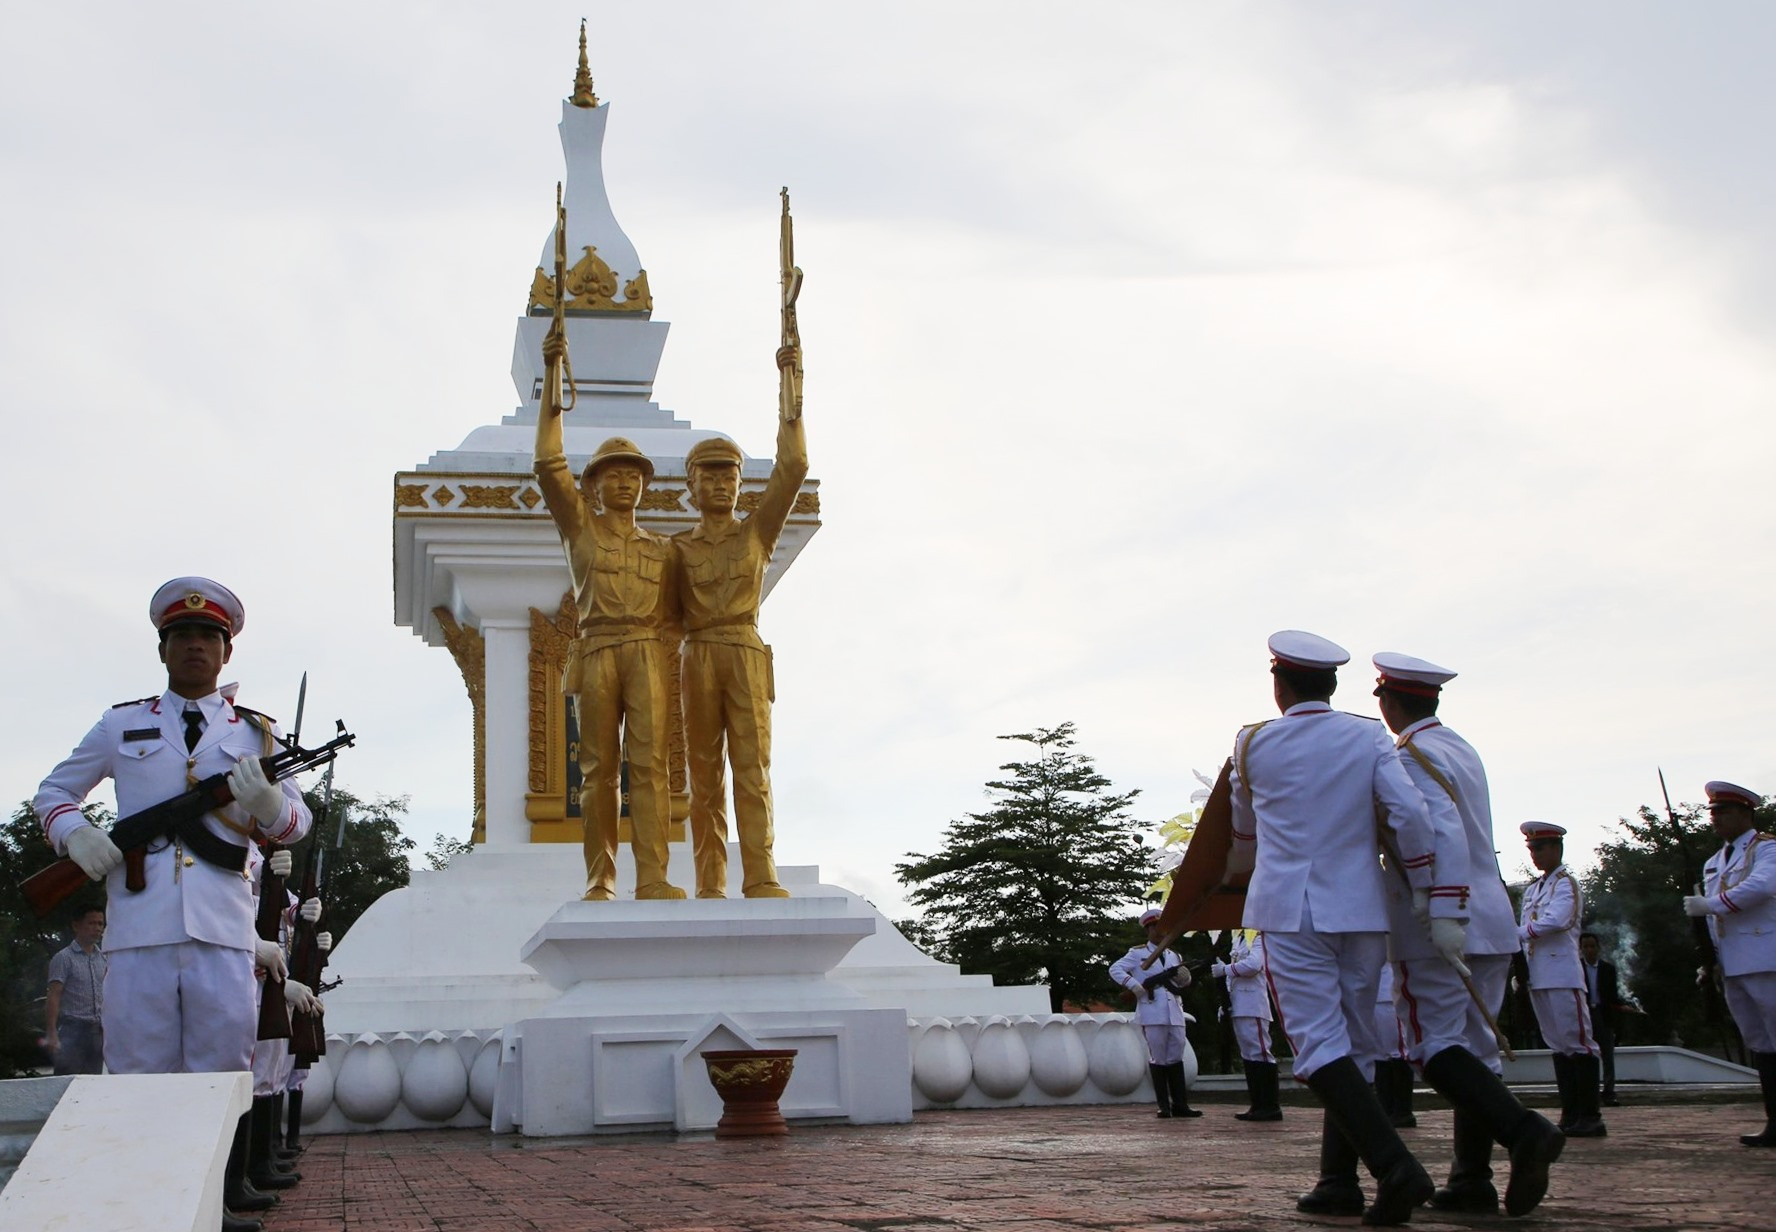 Nghi thức dâng hoa, dâng hương tại tượng đài đoàn kết Liên minh chiến đấu Lào - Việt Nam. Ảnh: Đ.N